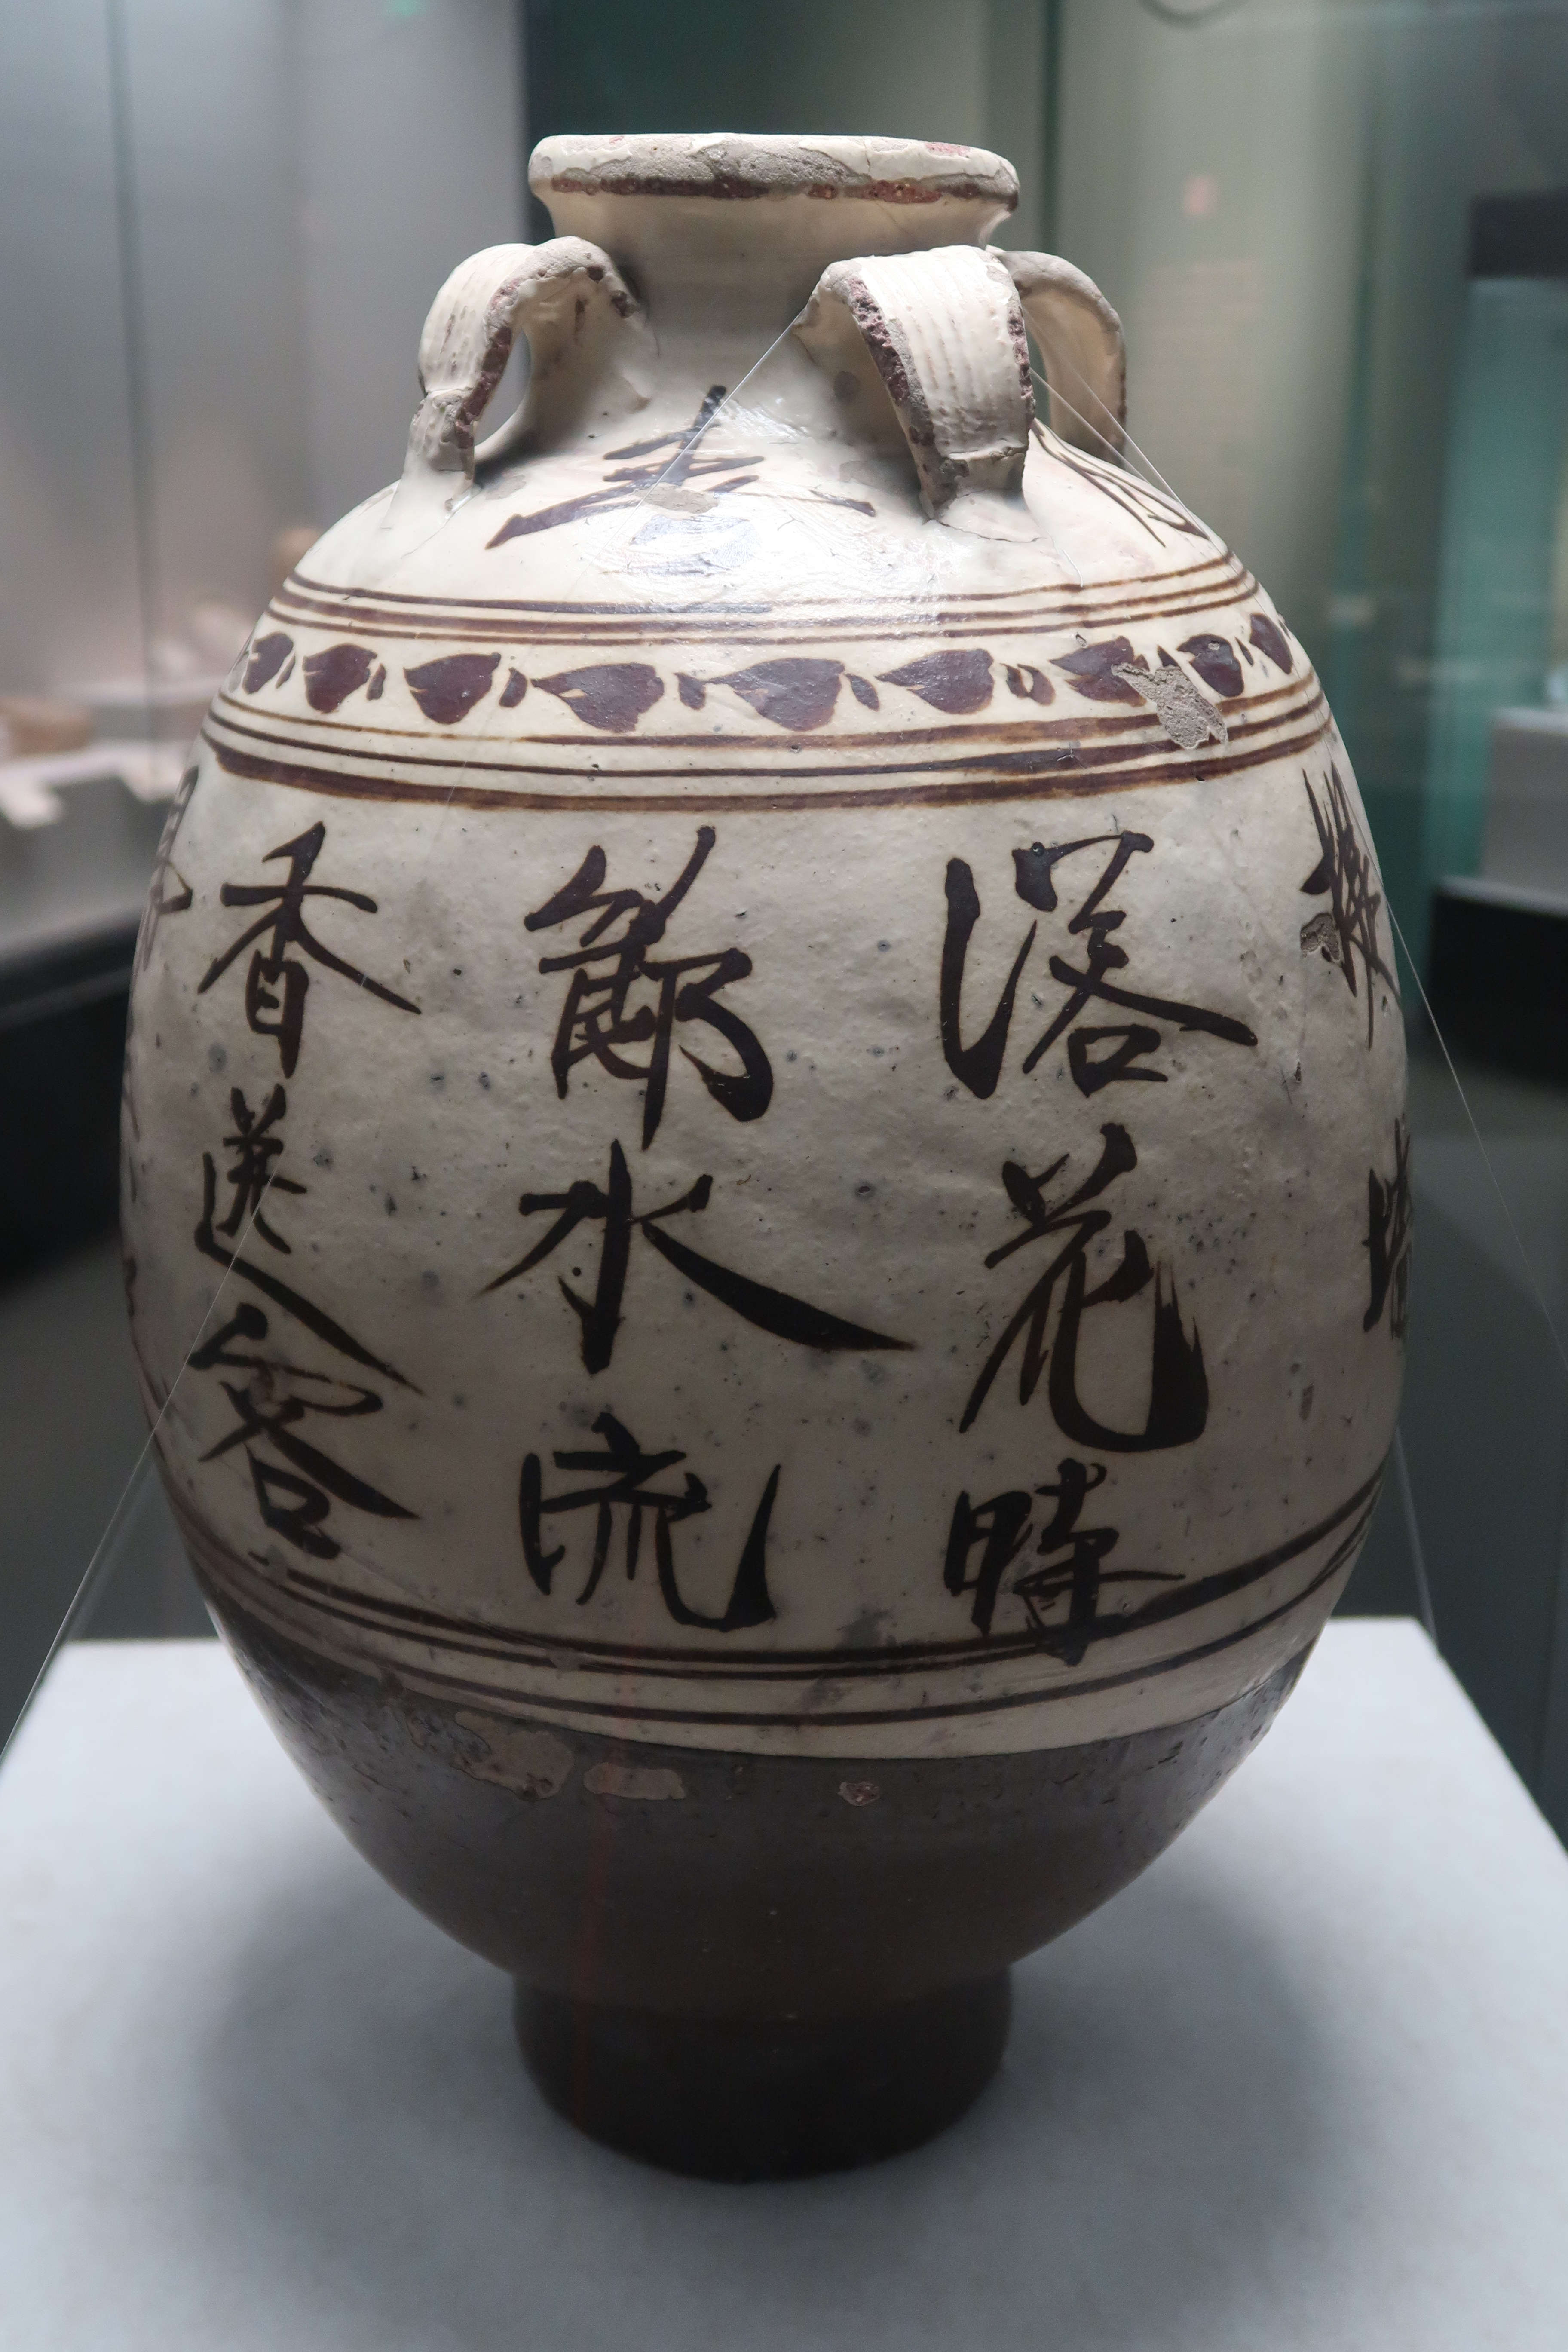 艺术·中华优秀传统文化系列谈丨汉字与陶瓷相映成趣数千年